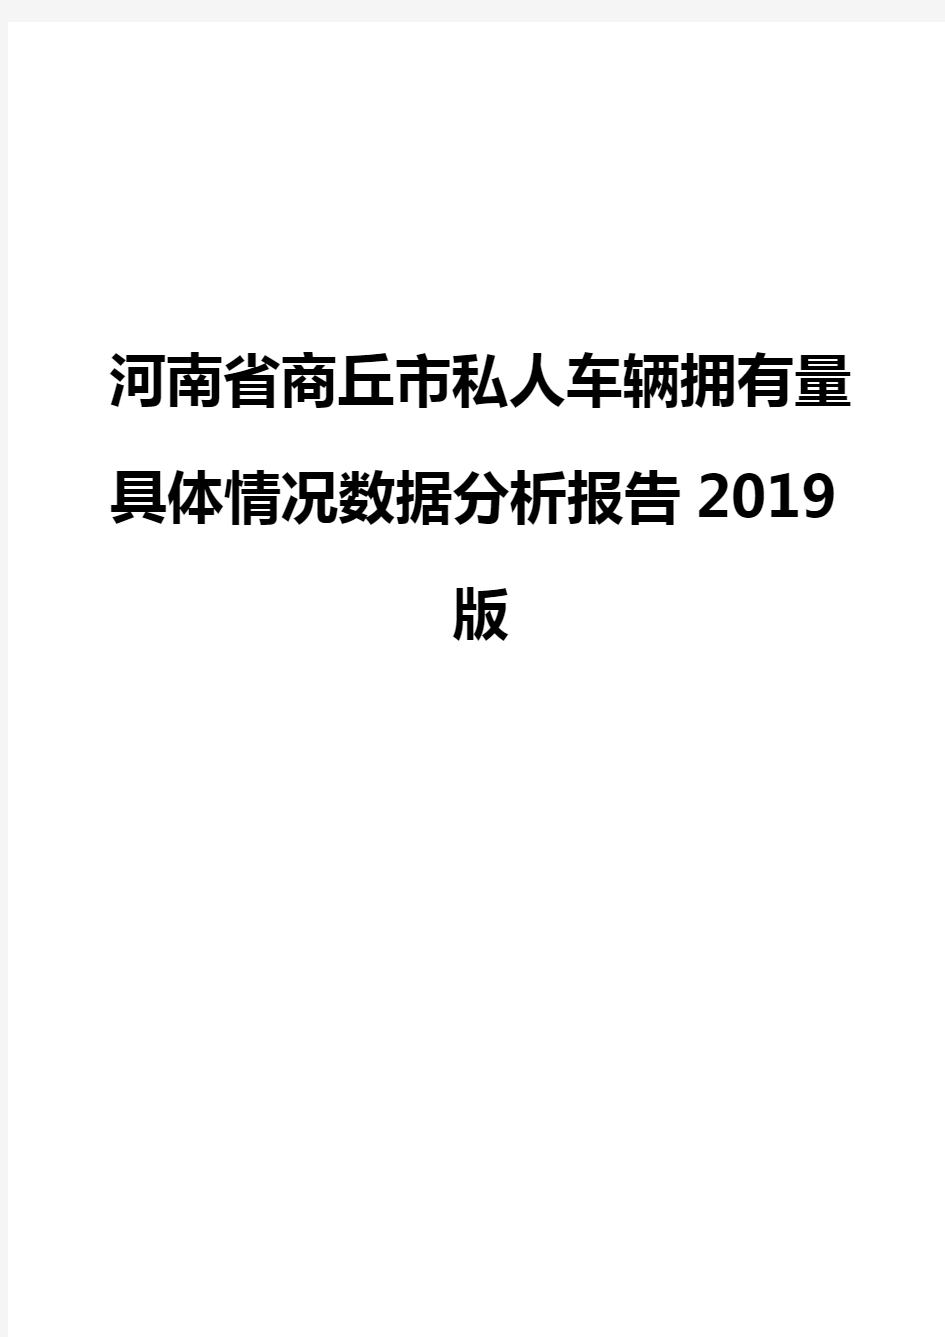 河南省商丘市私人车辆拥有量具体情况数据分析报告2019版